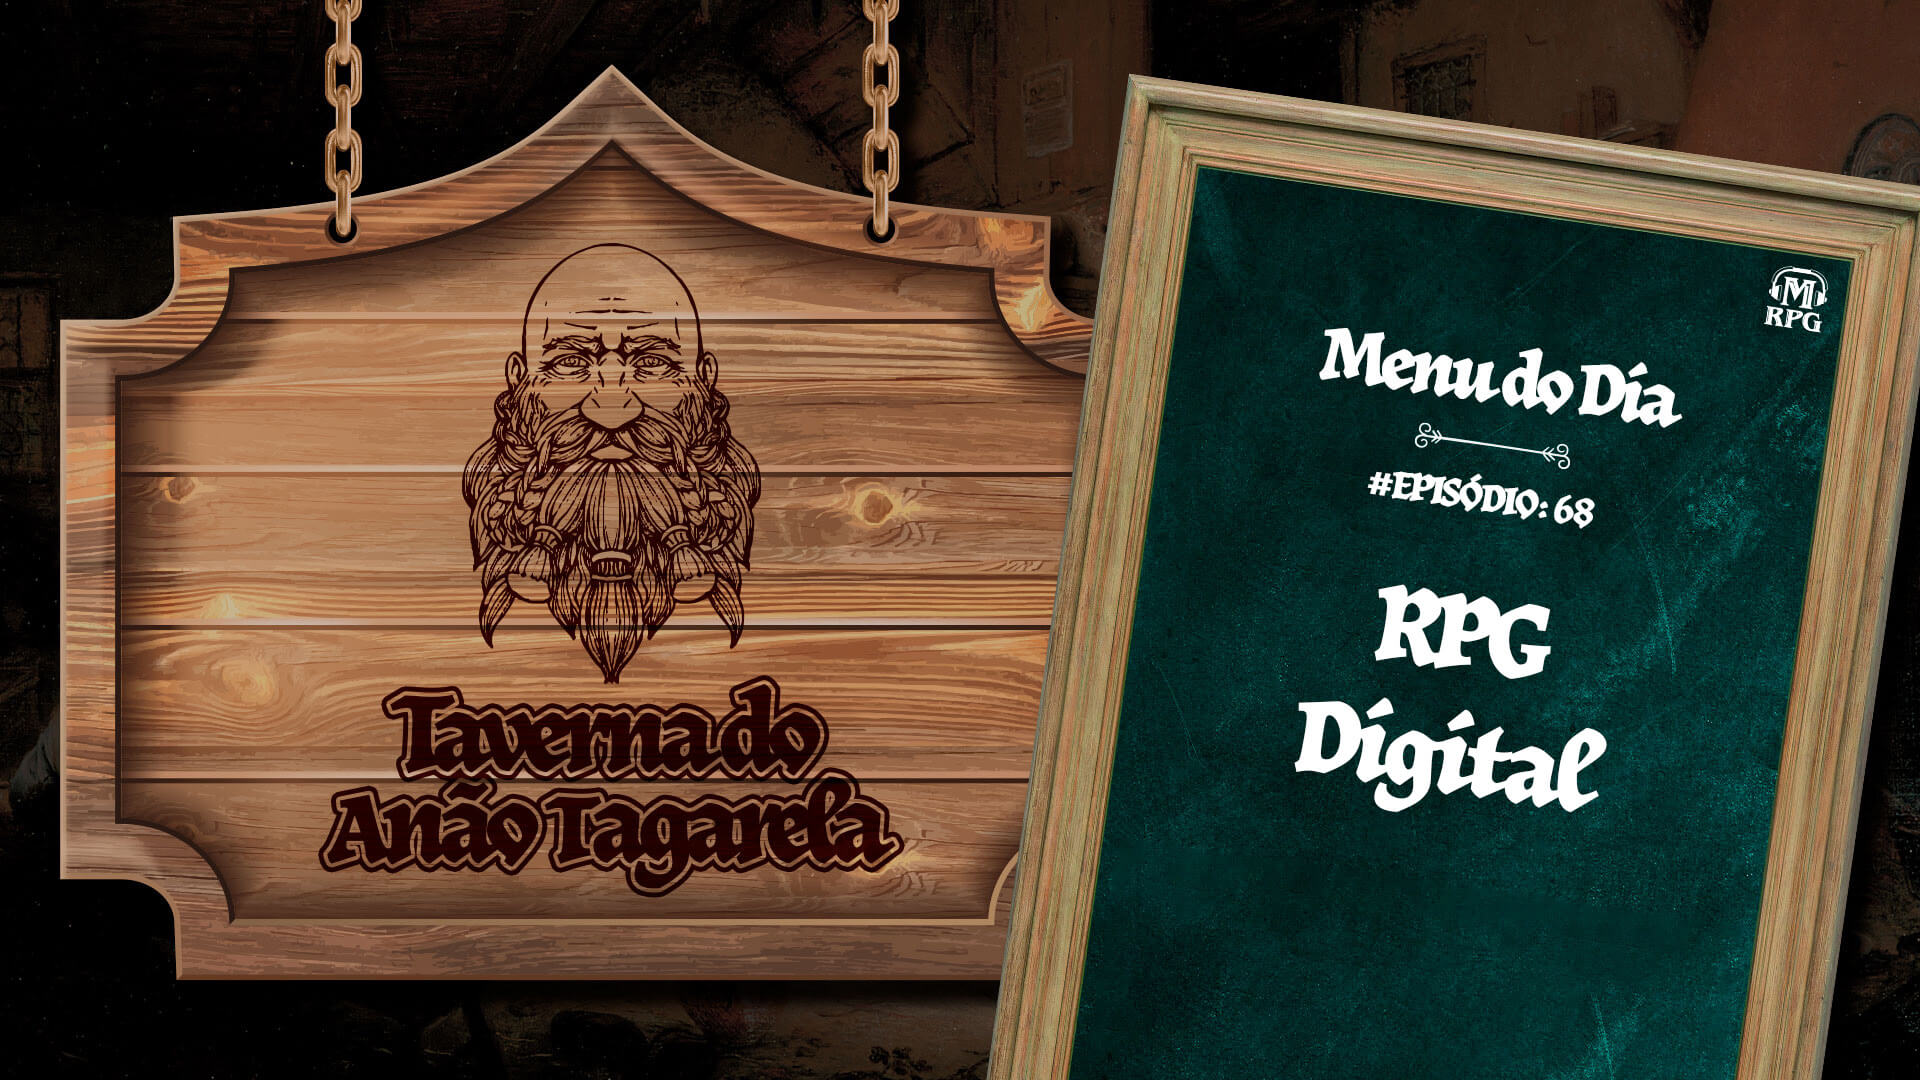 RPG Digital – Taverna do Anão Tagarela #68